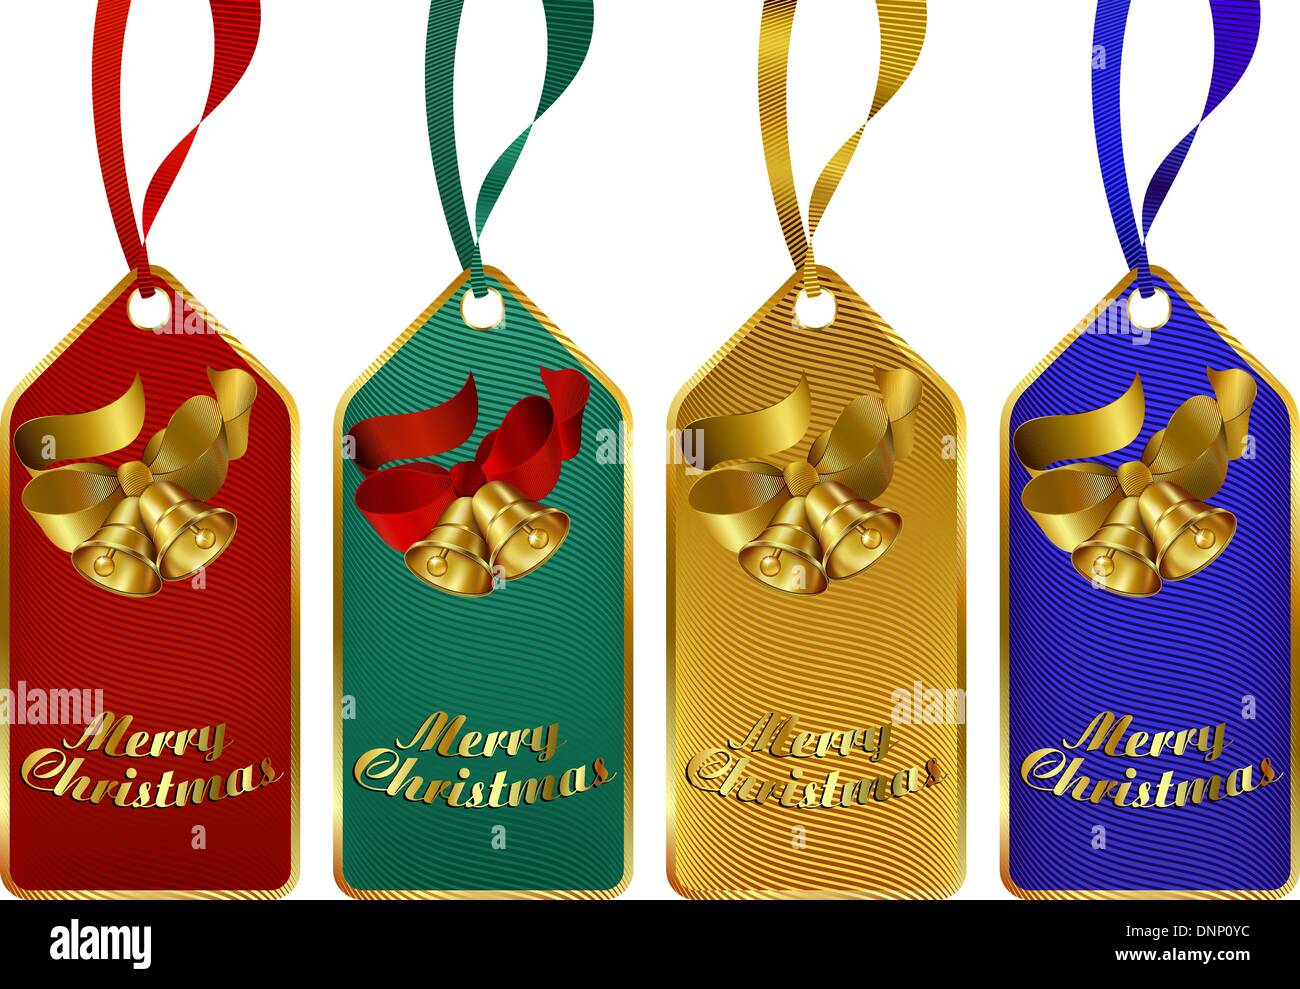 Weihnachtsgeschenk Stichwörter in vier kräftigen Farben Stock Vektor